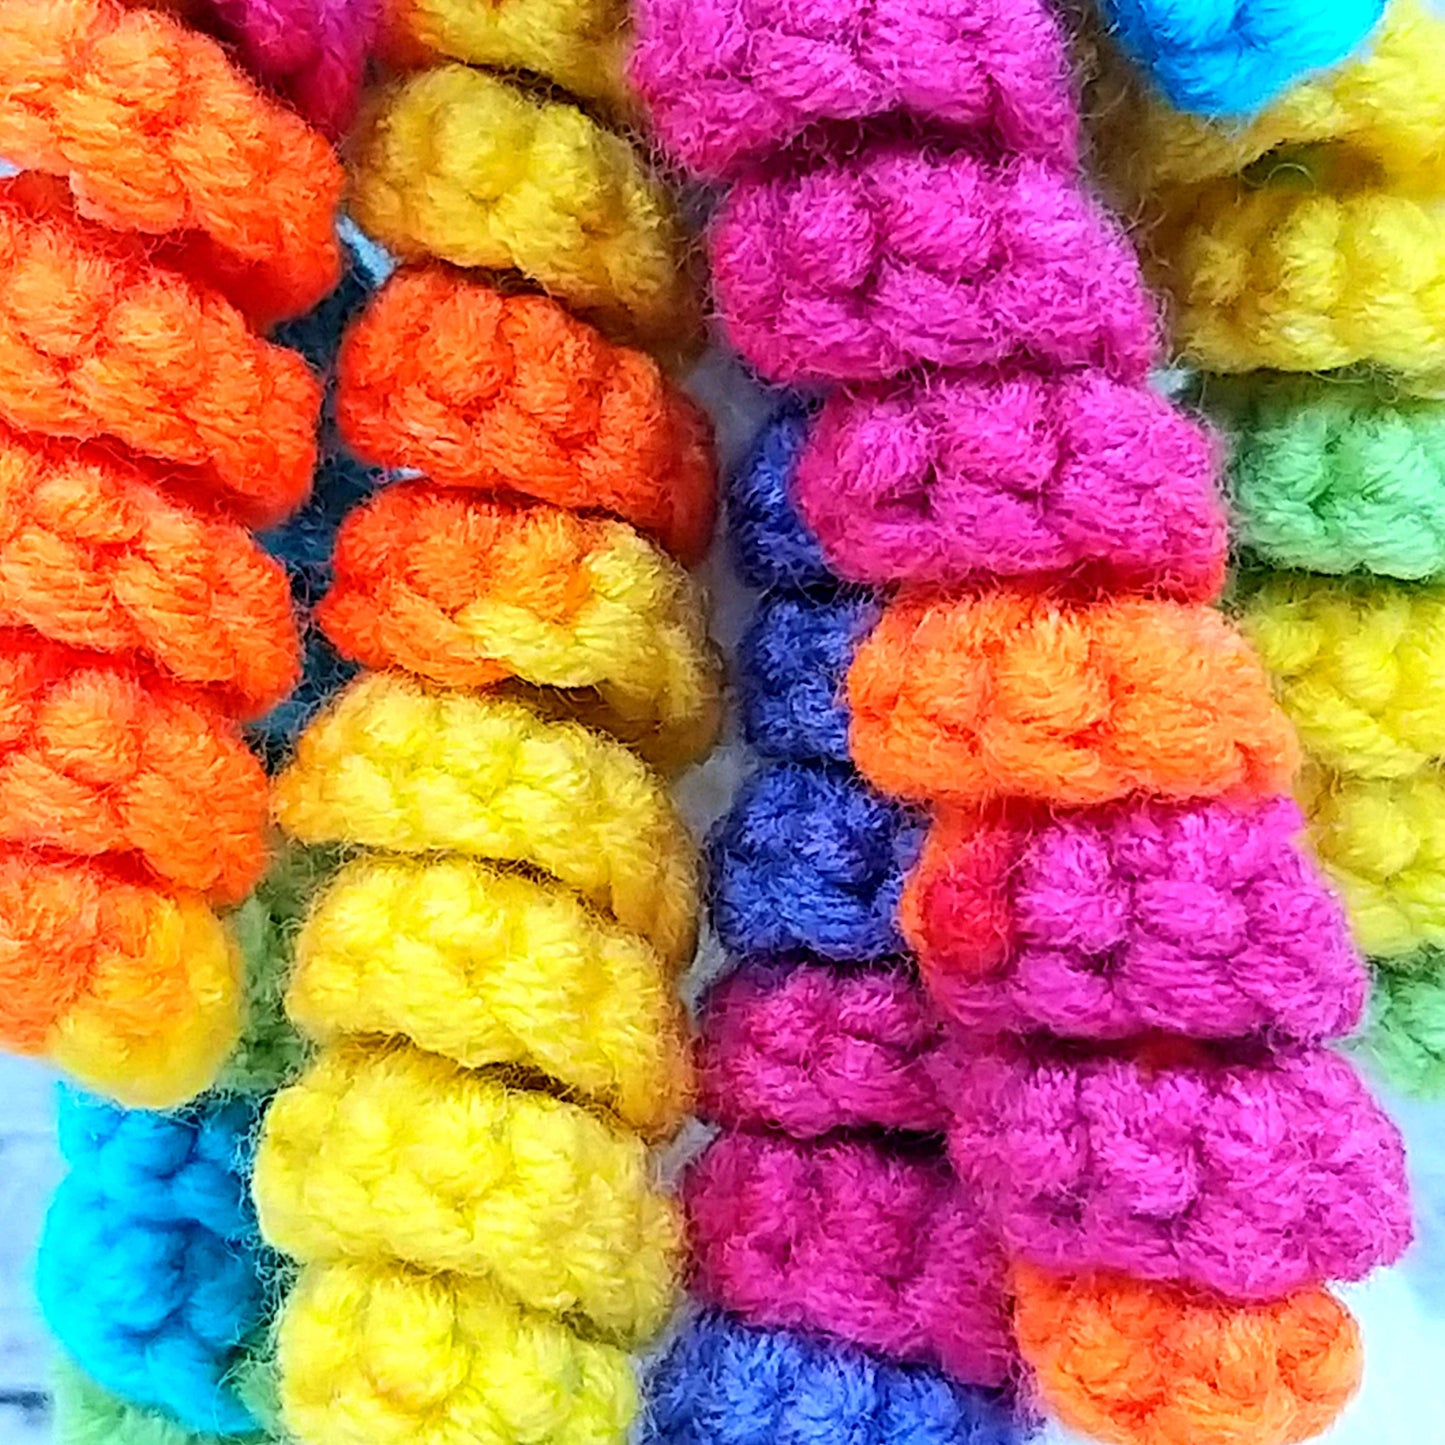 Rainbow the Unicorn Luxury Crochet Kit